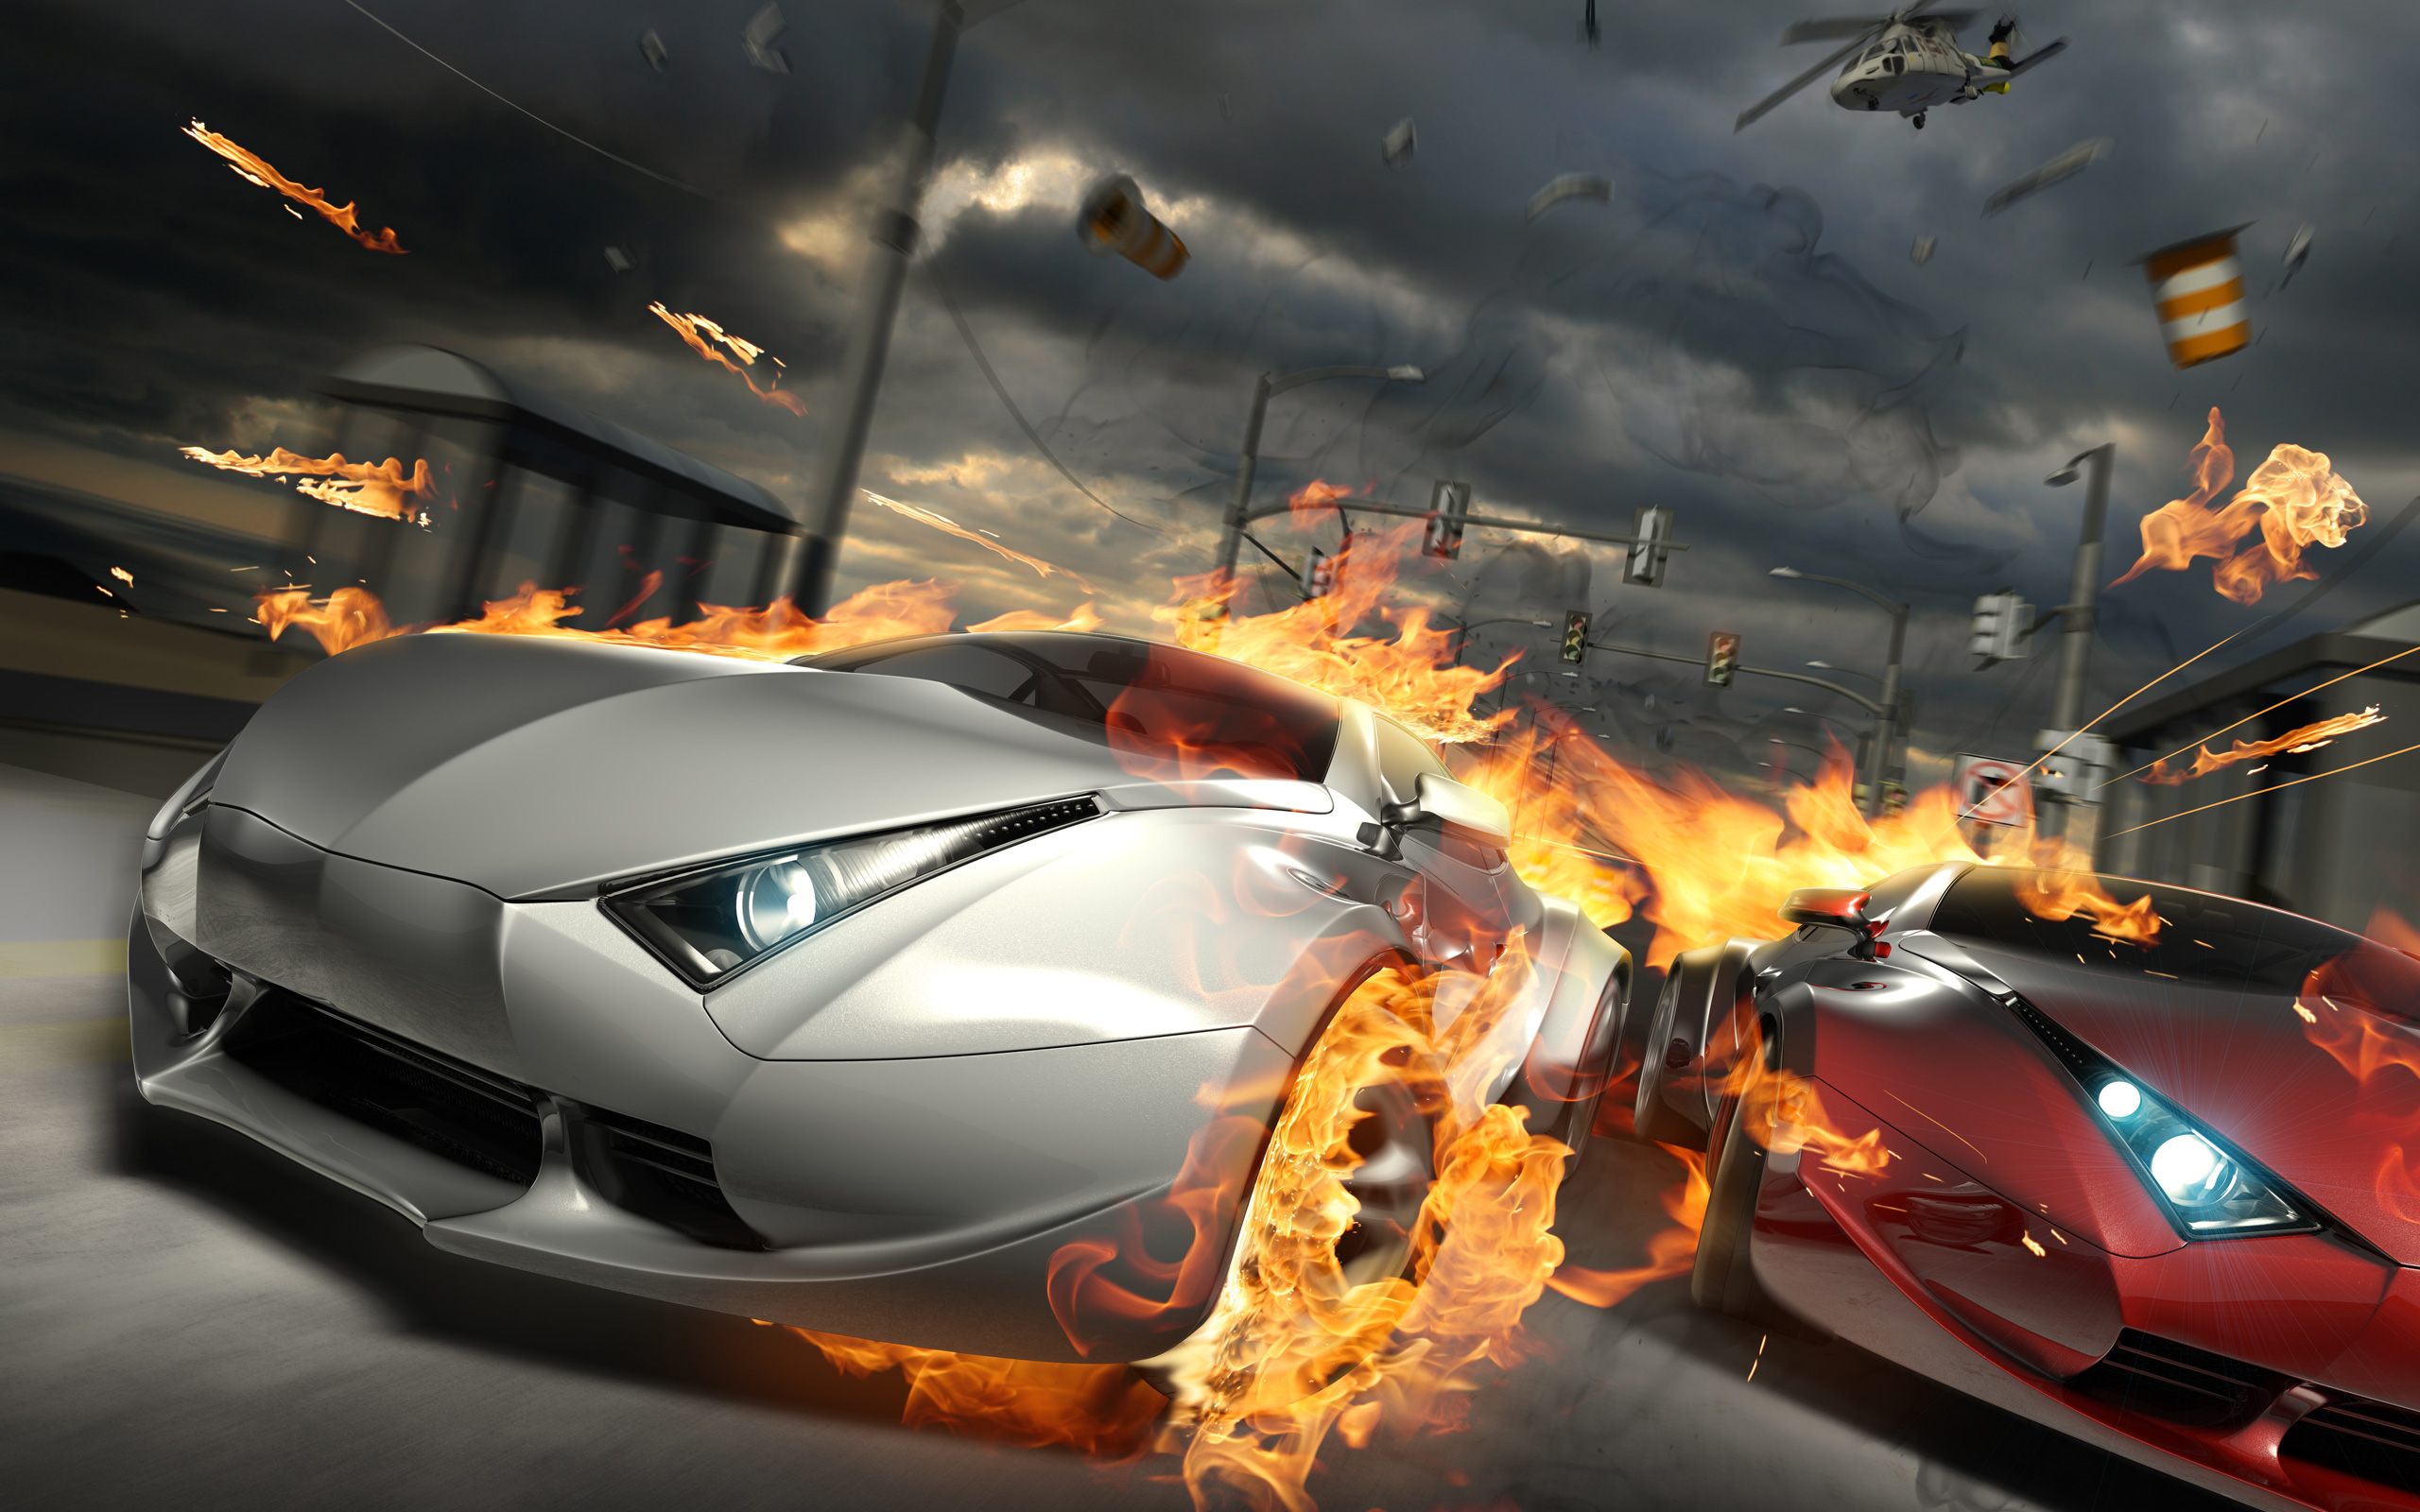 Destructive Car Race Wallpaper HD